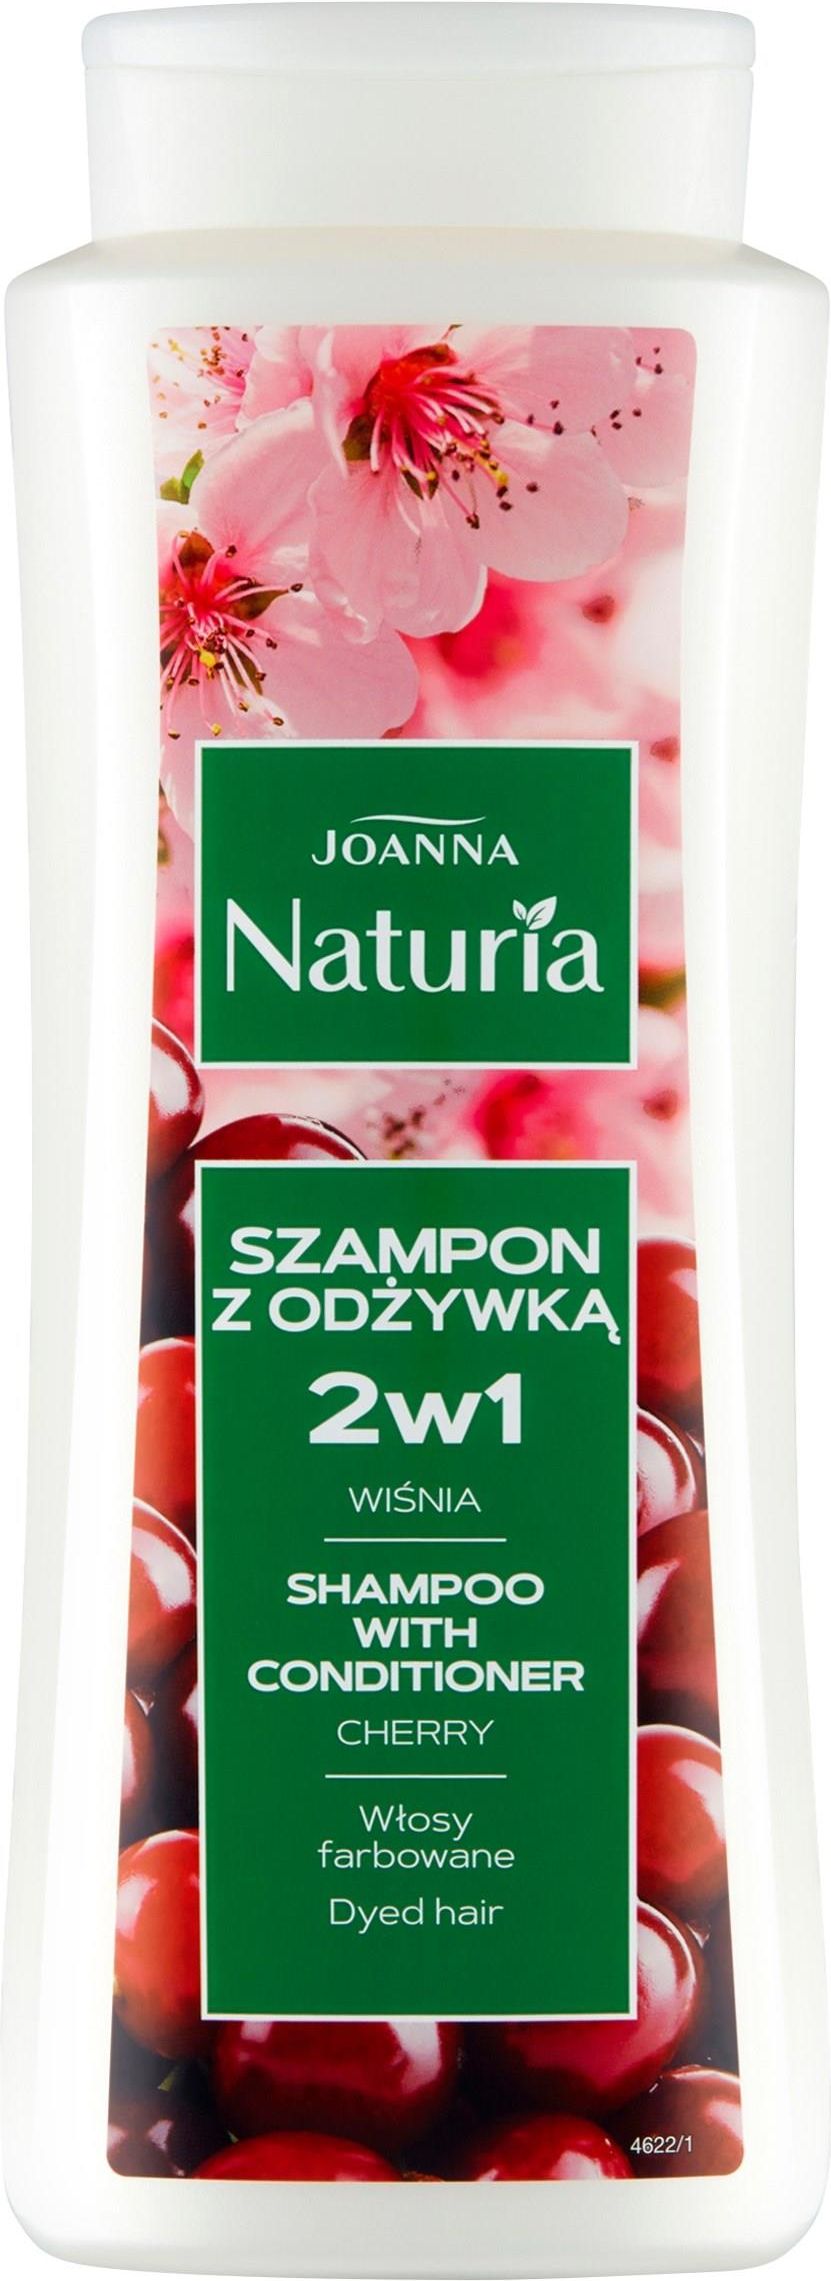 joanna naturia szampon wiśniowy opinie